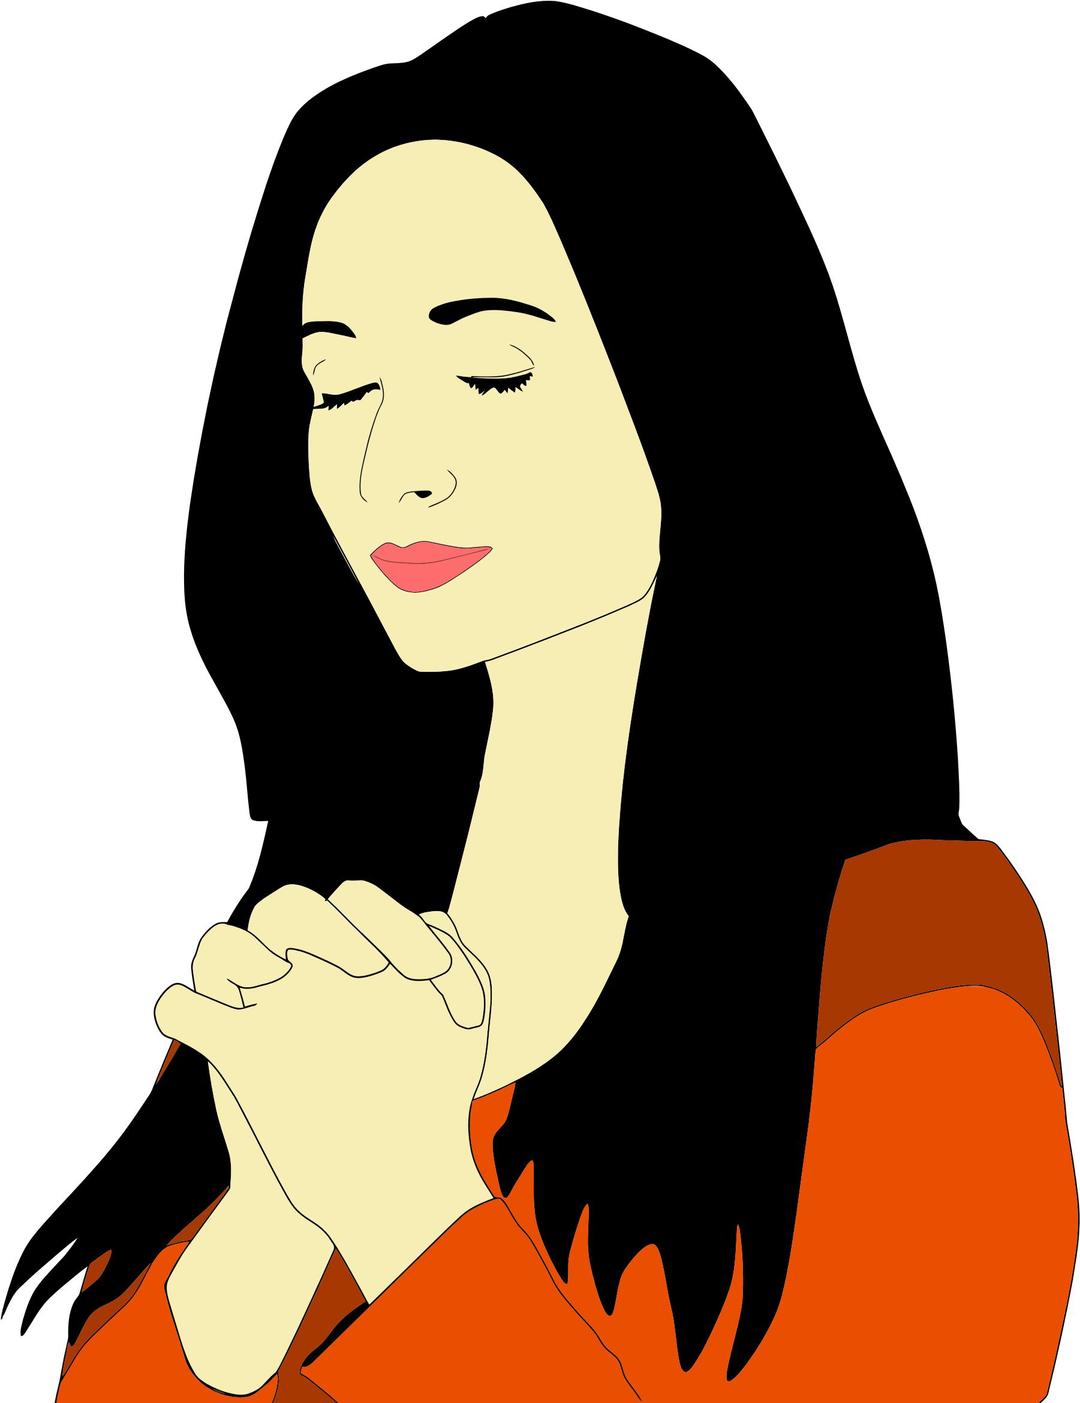 Woman Praying Illustration png transparent